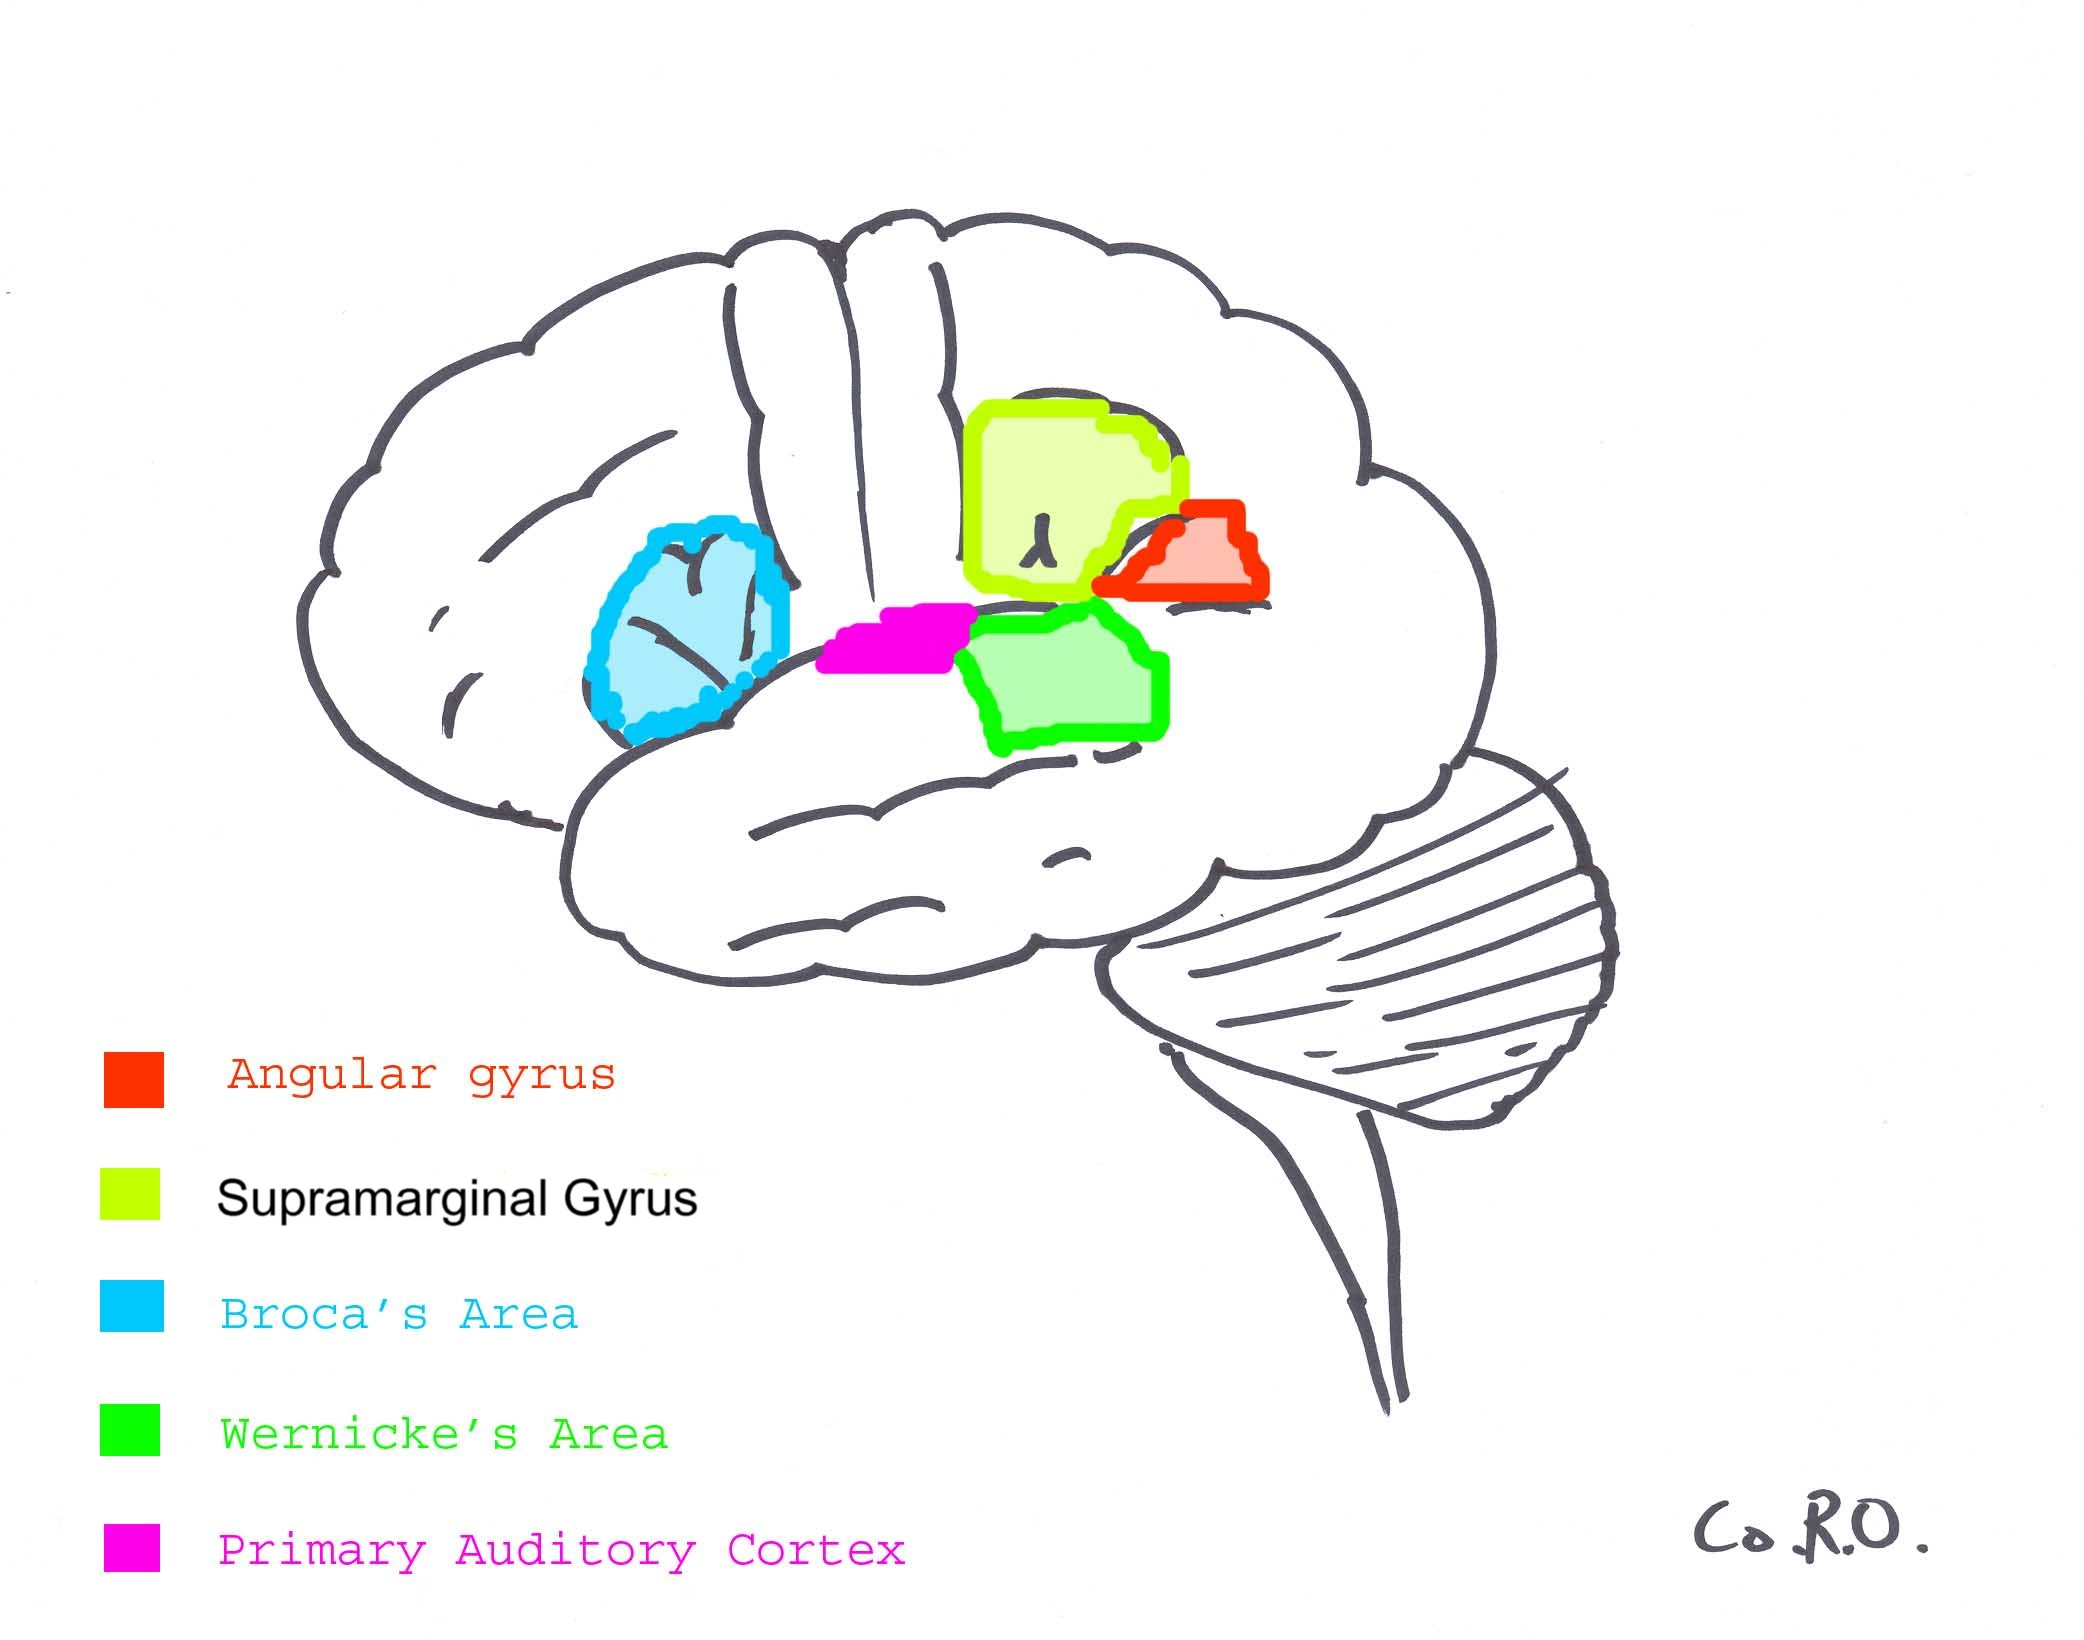 auditory nerve psychology definition